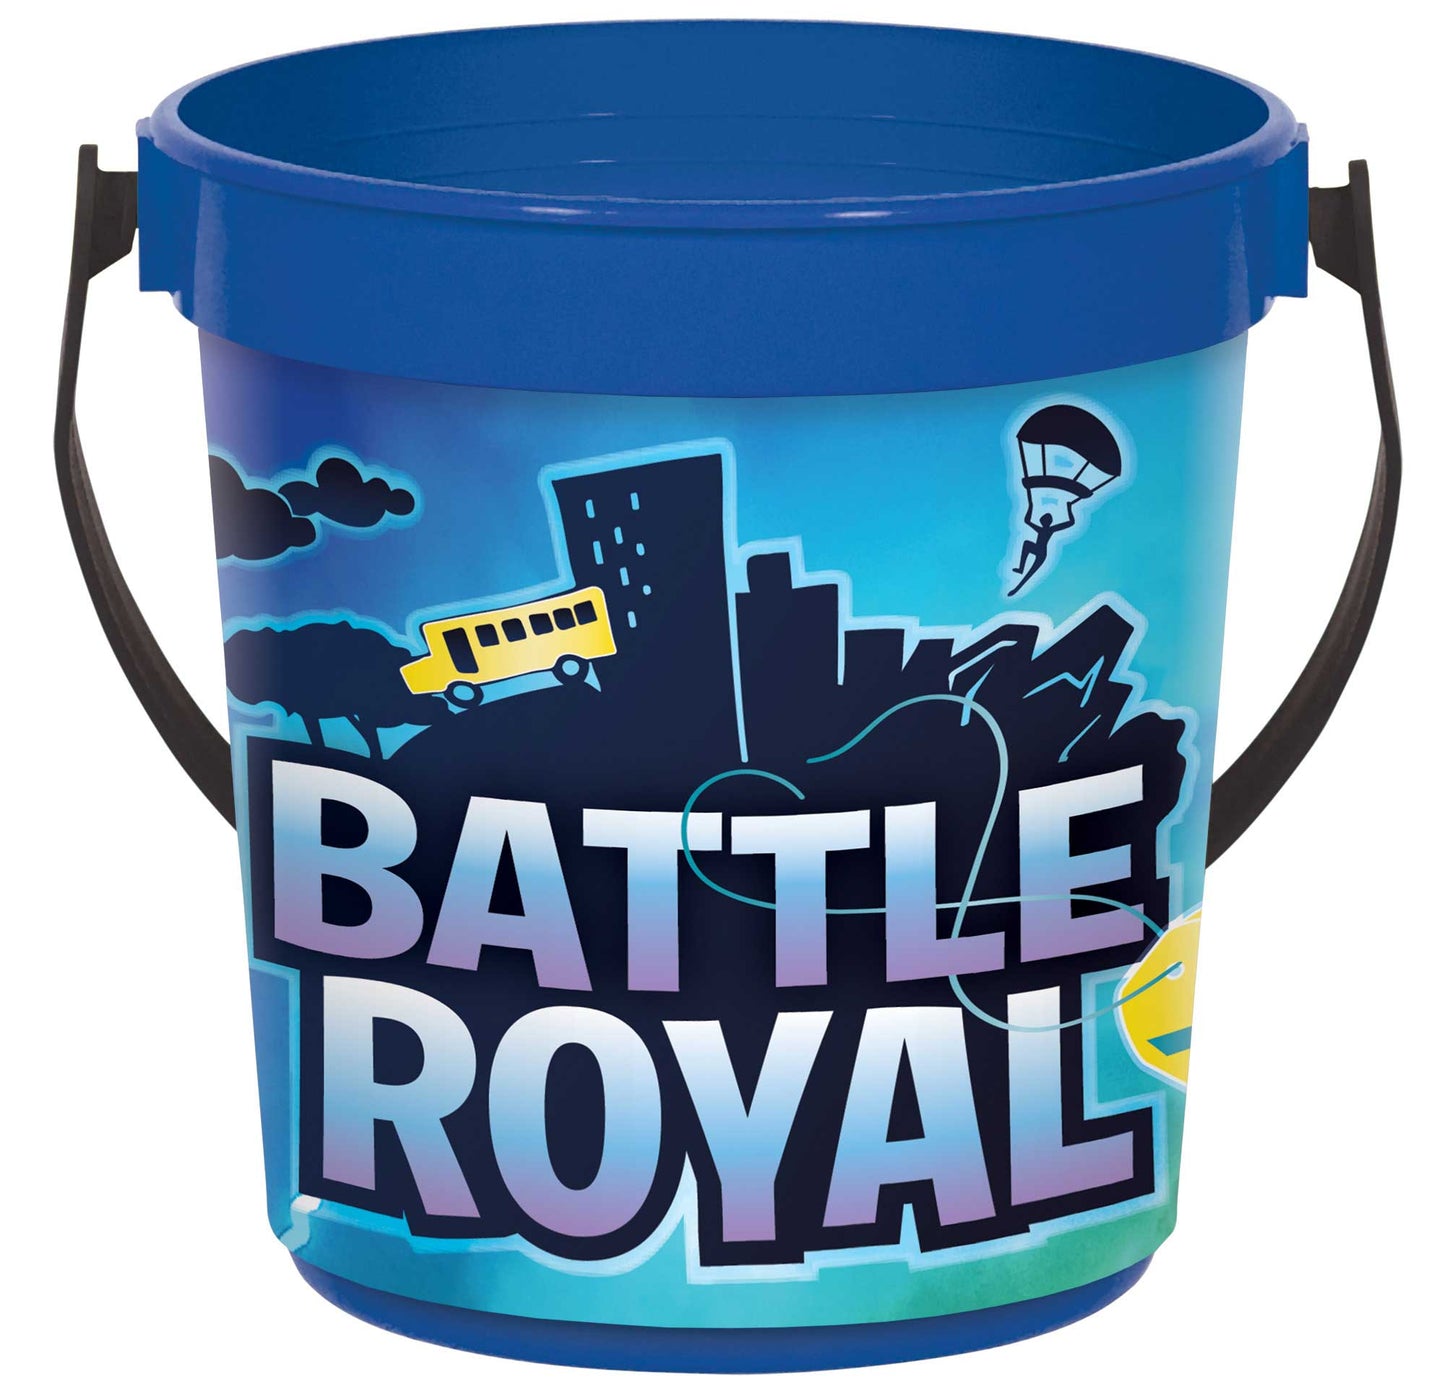 Battle Royal Plastic Favor Container